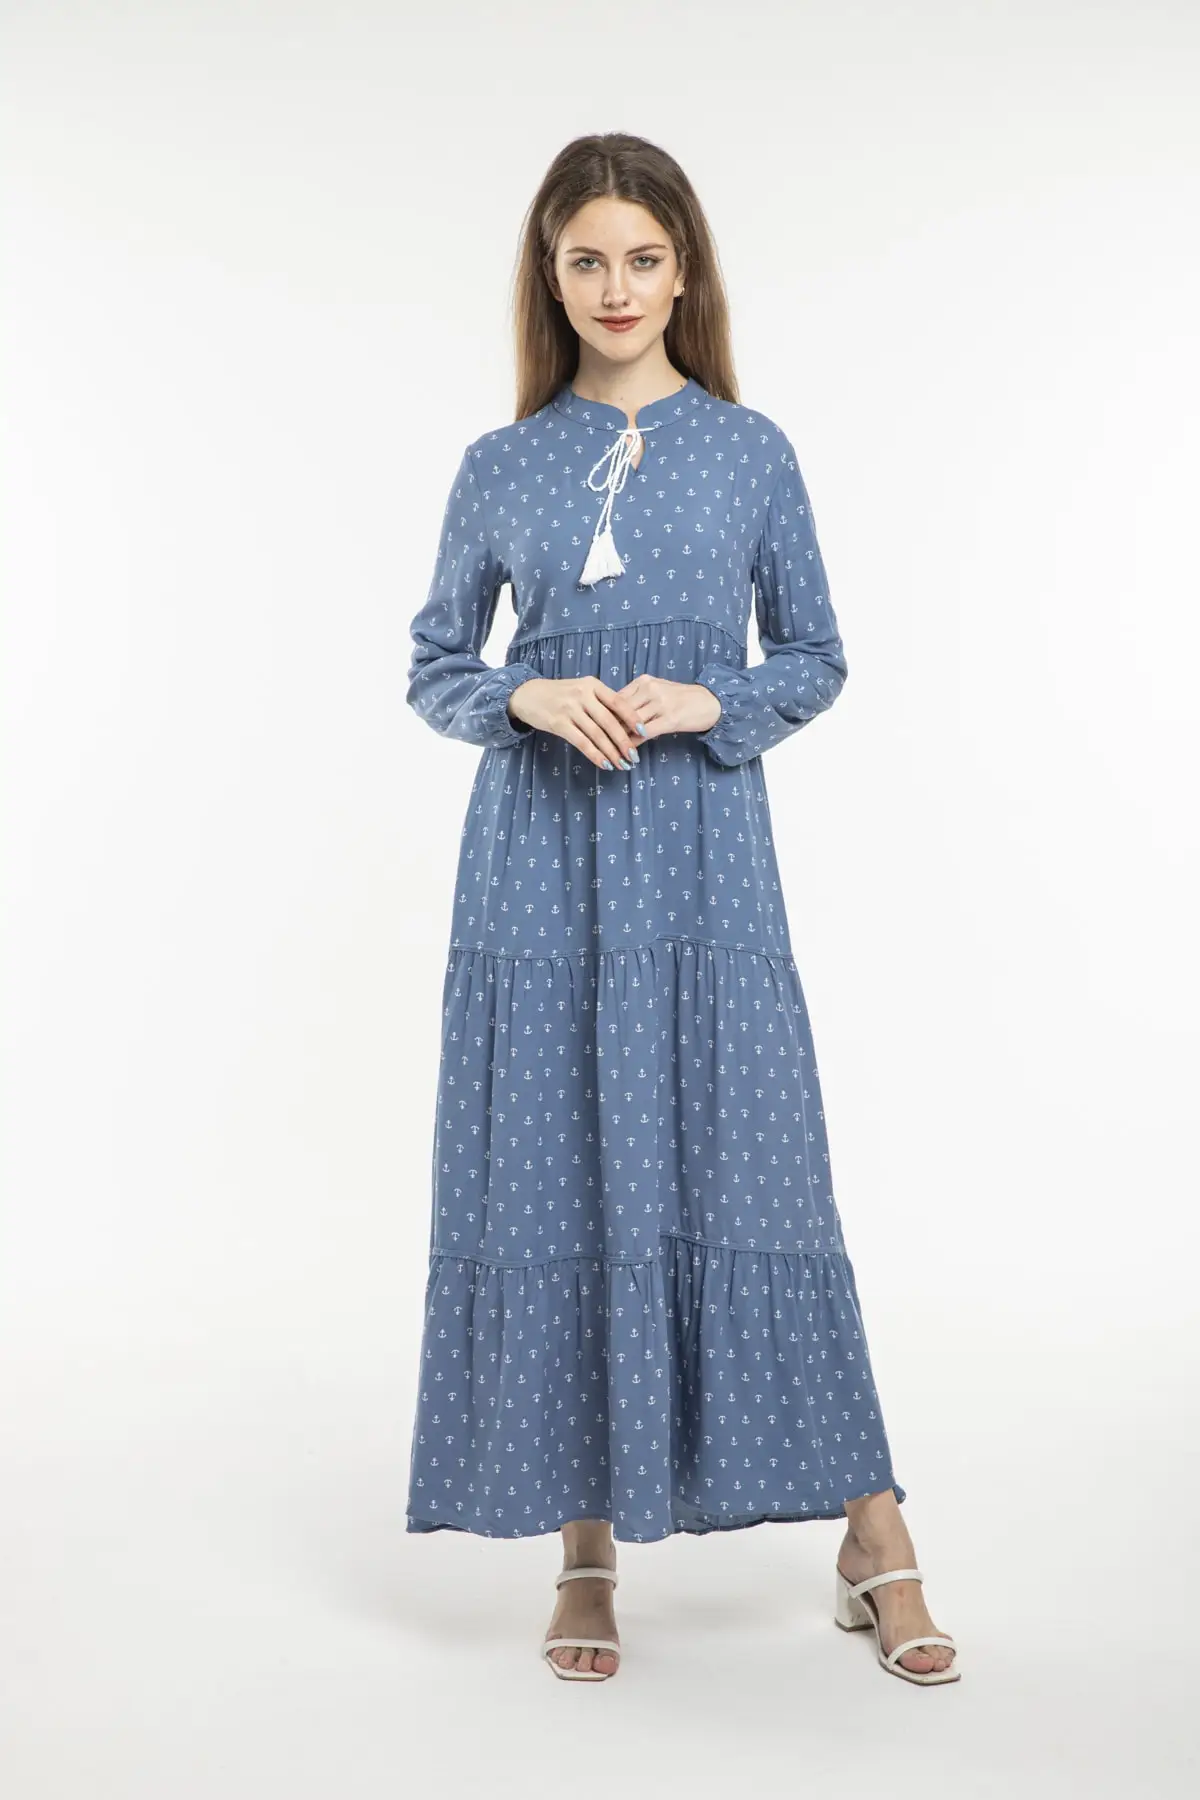 Женское платье-хиджаб в горошек, синее повседневное удобное платье из 100% вискозы с длинным рукавом и воротником на шнуровке